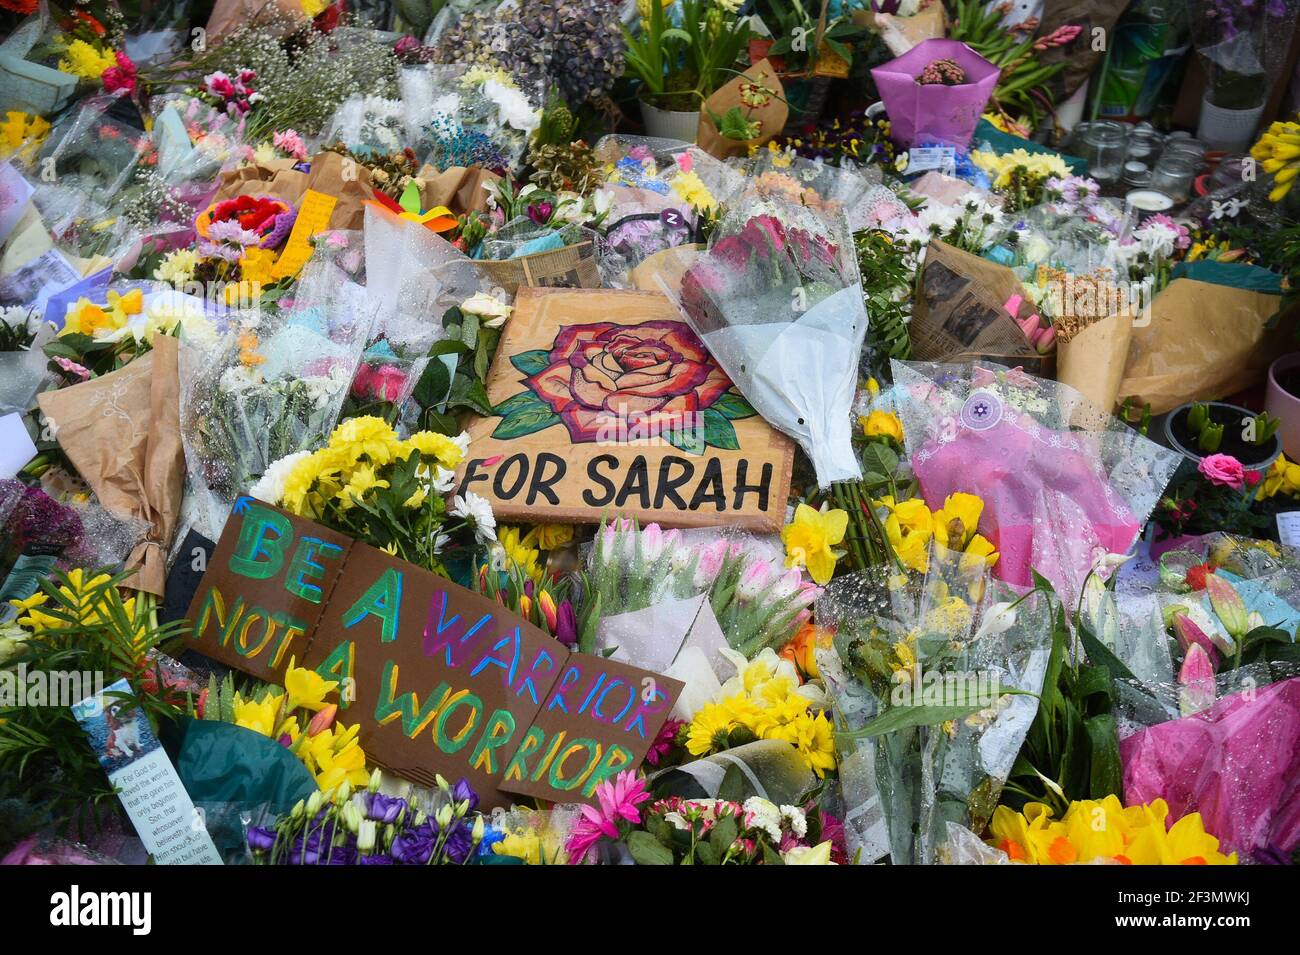 Homenajes florales dejados junto al bandstand en Clapham Common, Londres, para Sarah Everard. PC Wayne Couzens, de 48 años, apareció en The Old Bailey en Londres acusado del secuestro y asesinato de la joven de 33 años. Foto fecha: Martes 16 de marzo de 2021. Foto de stock